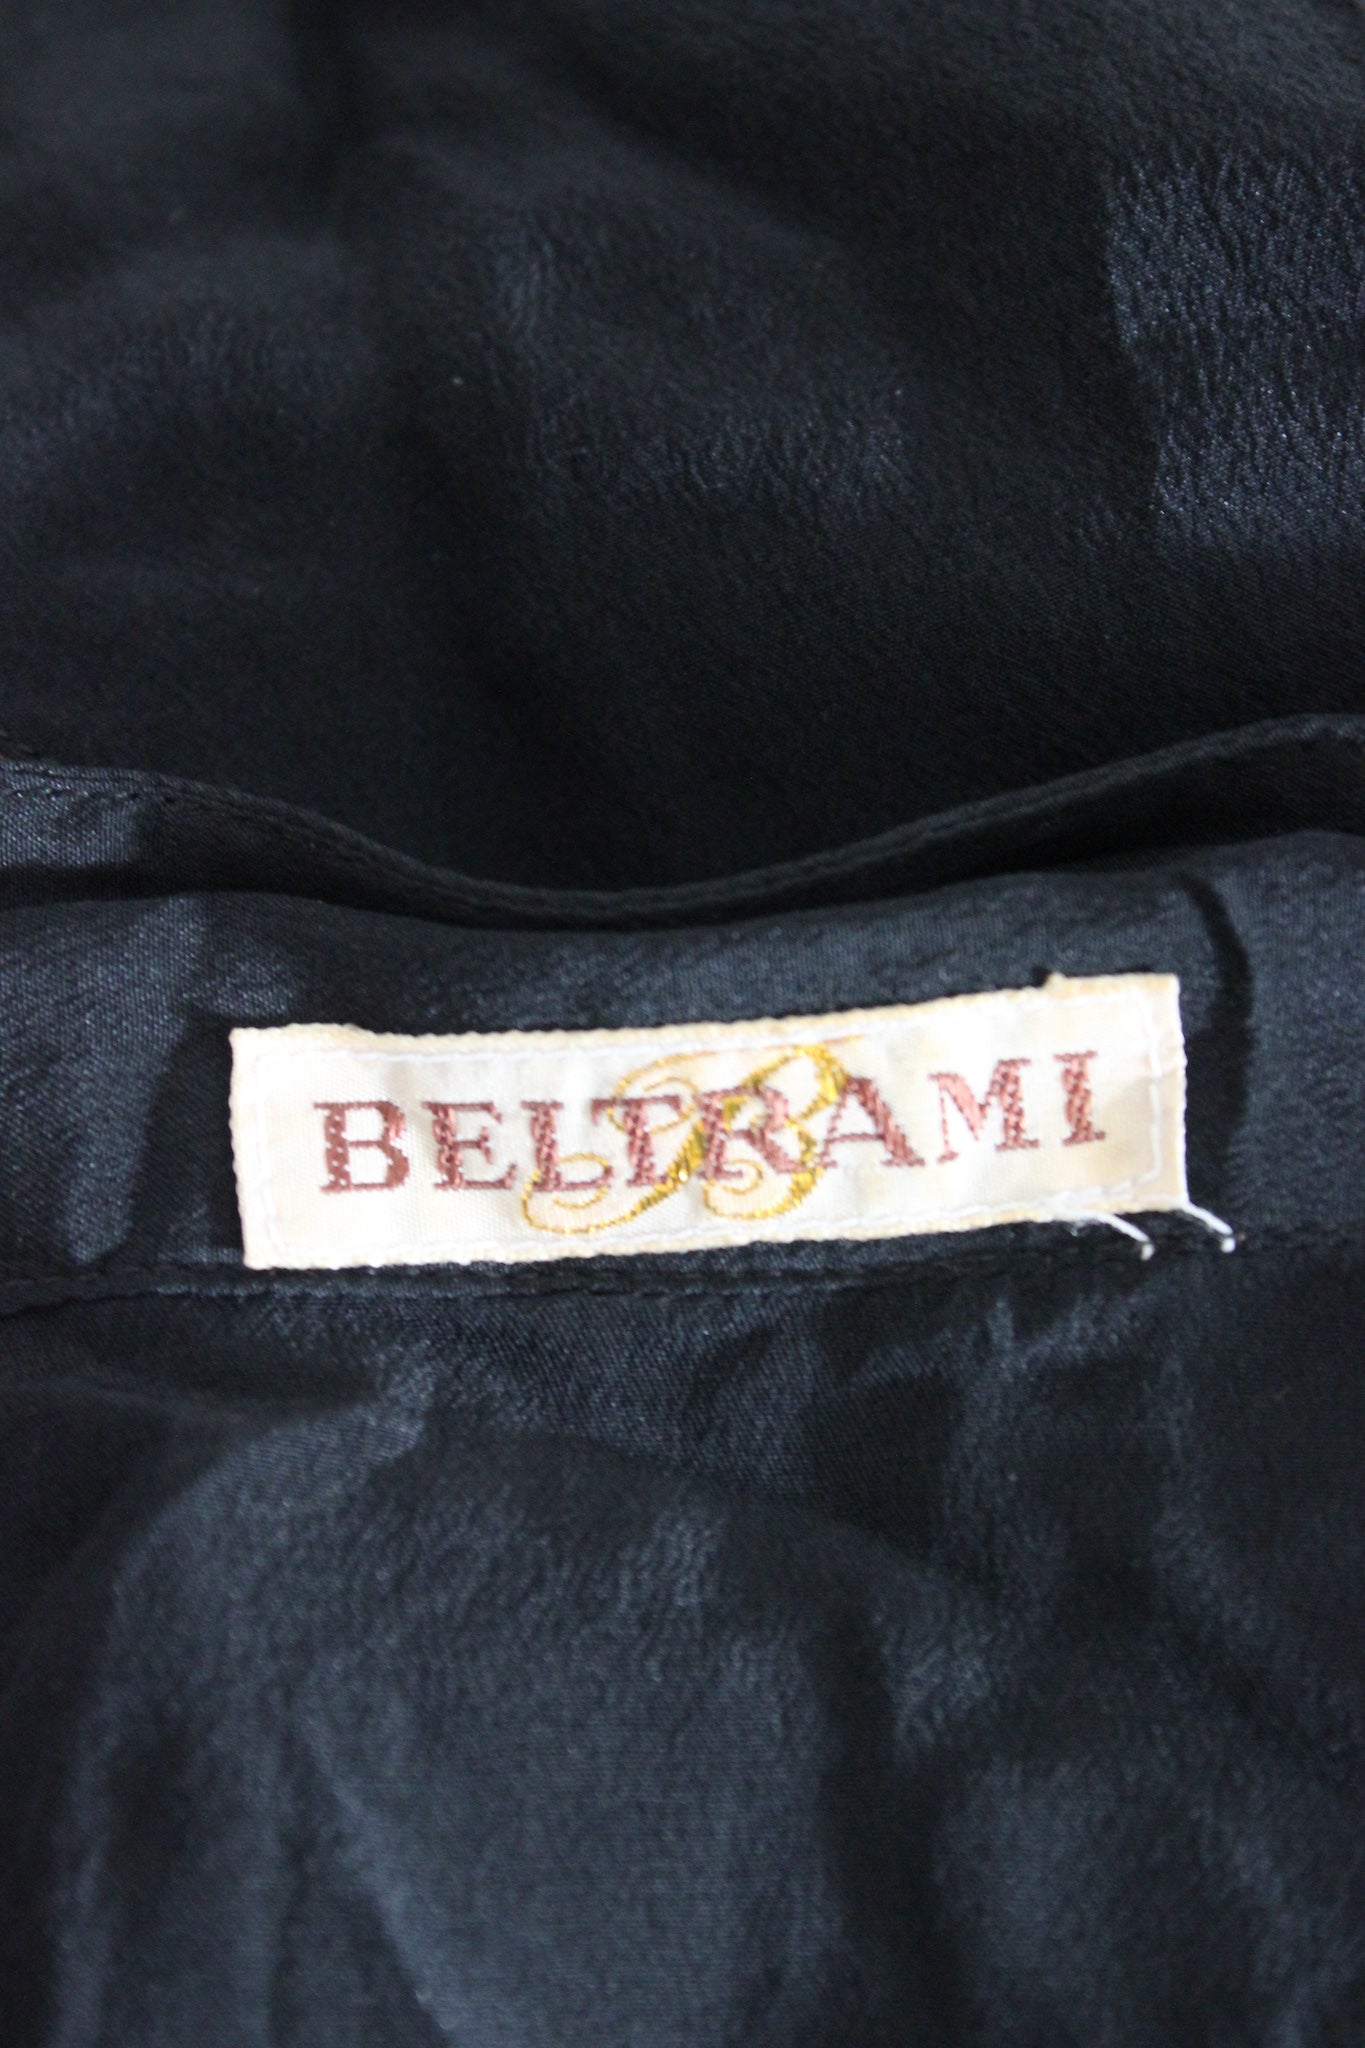 Beltrami Black Silk Jacket Vintage 80s